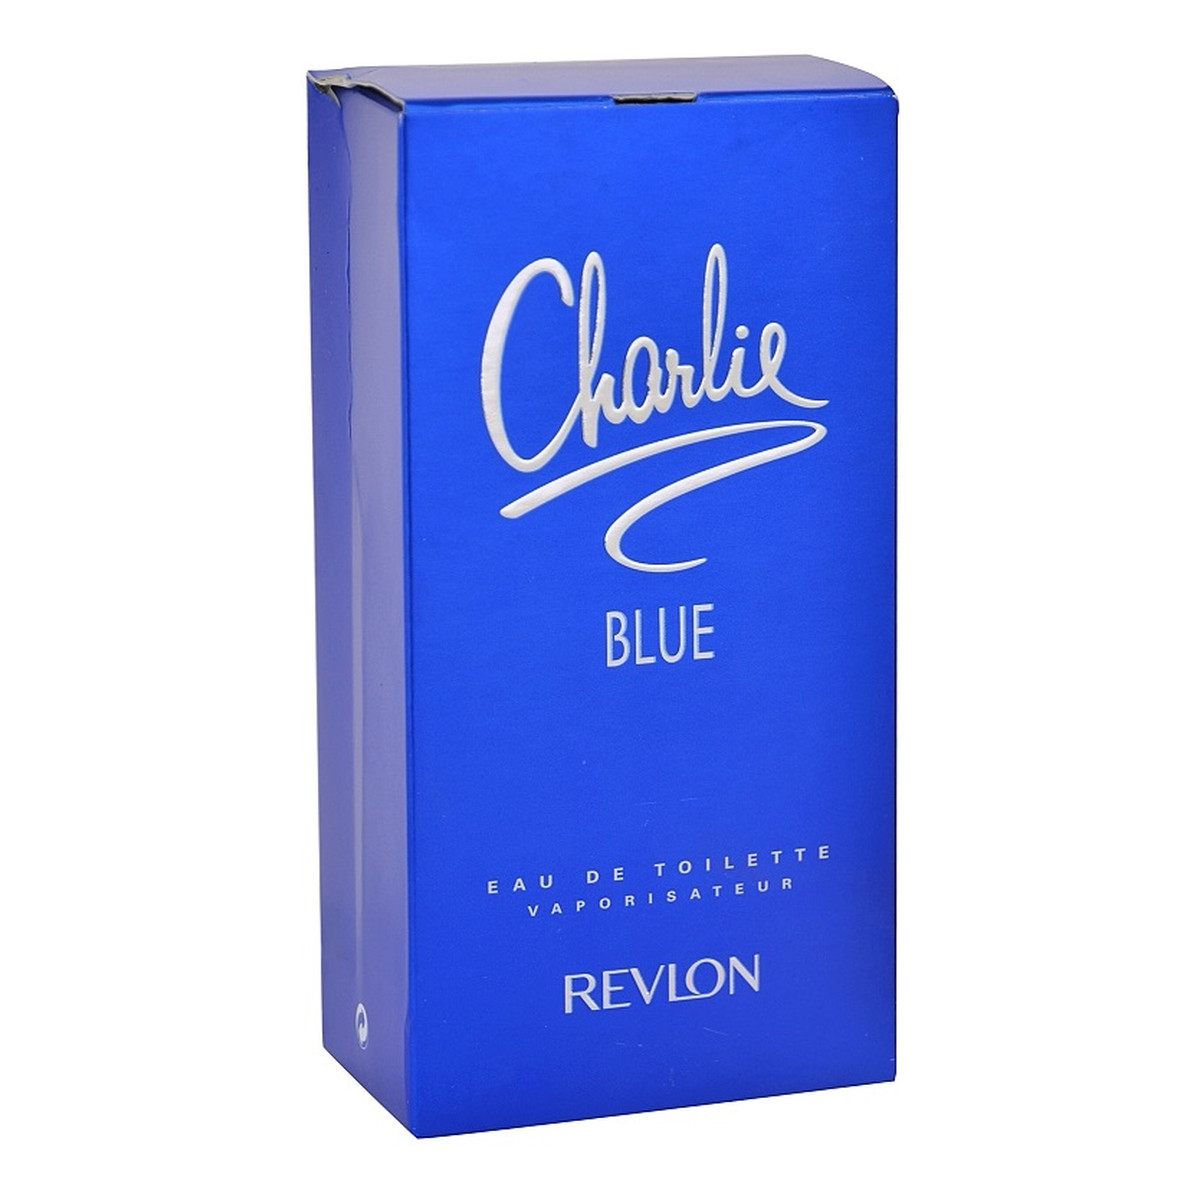 Revlon Charlie Blue woda toaletowa dla kobiet 100ml